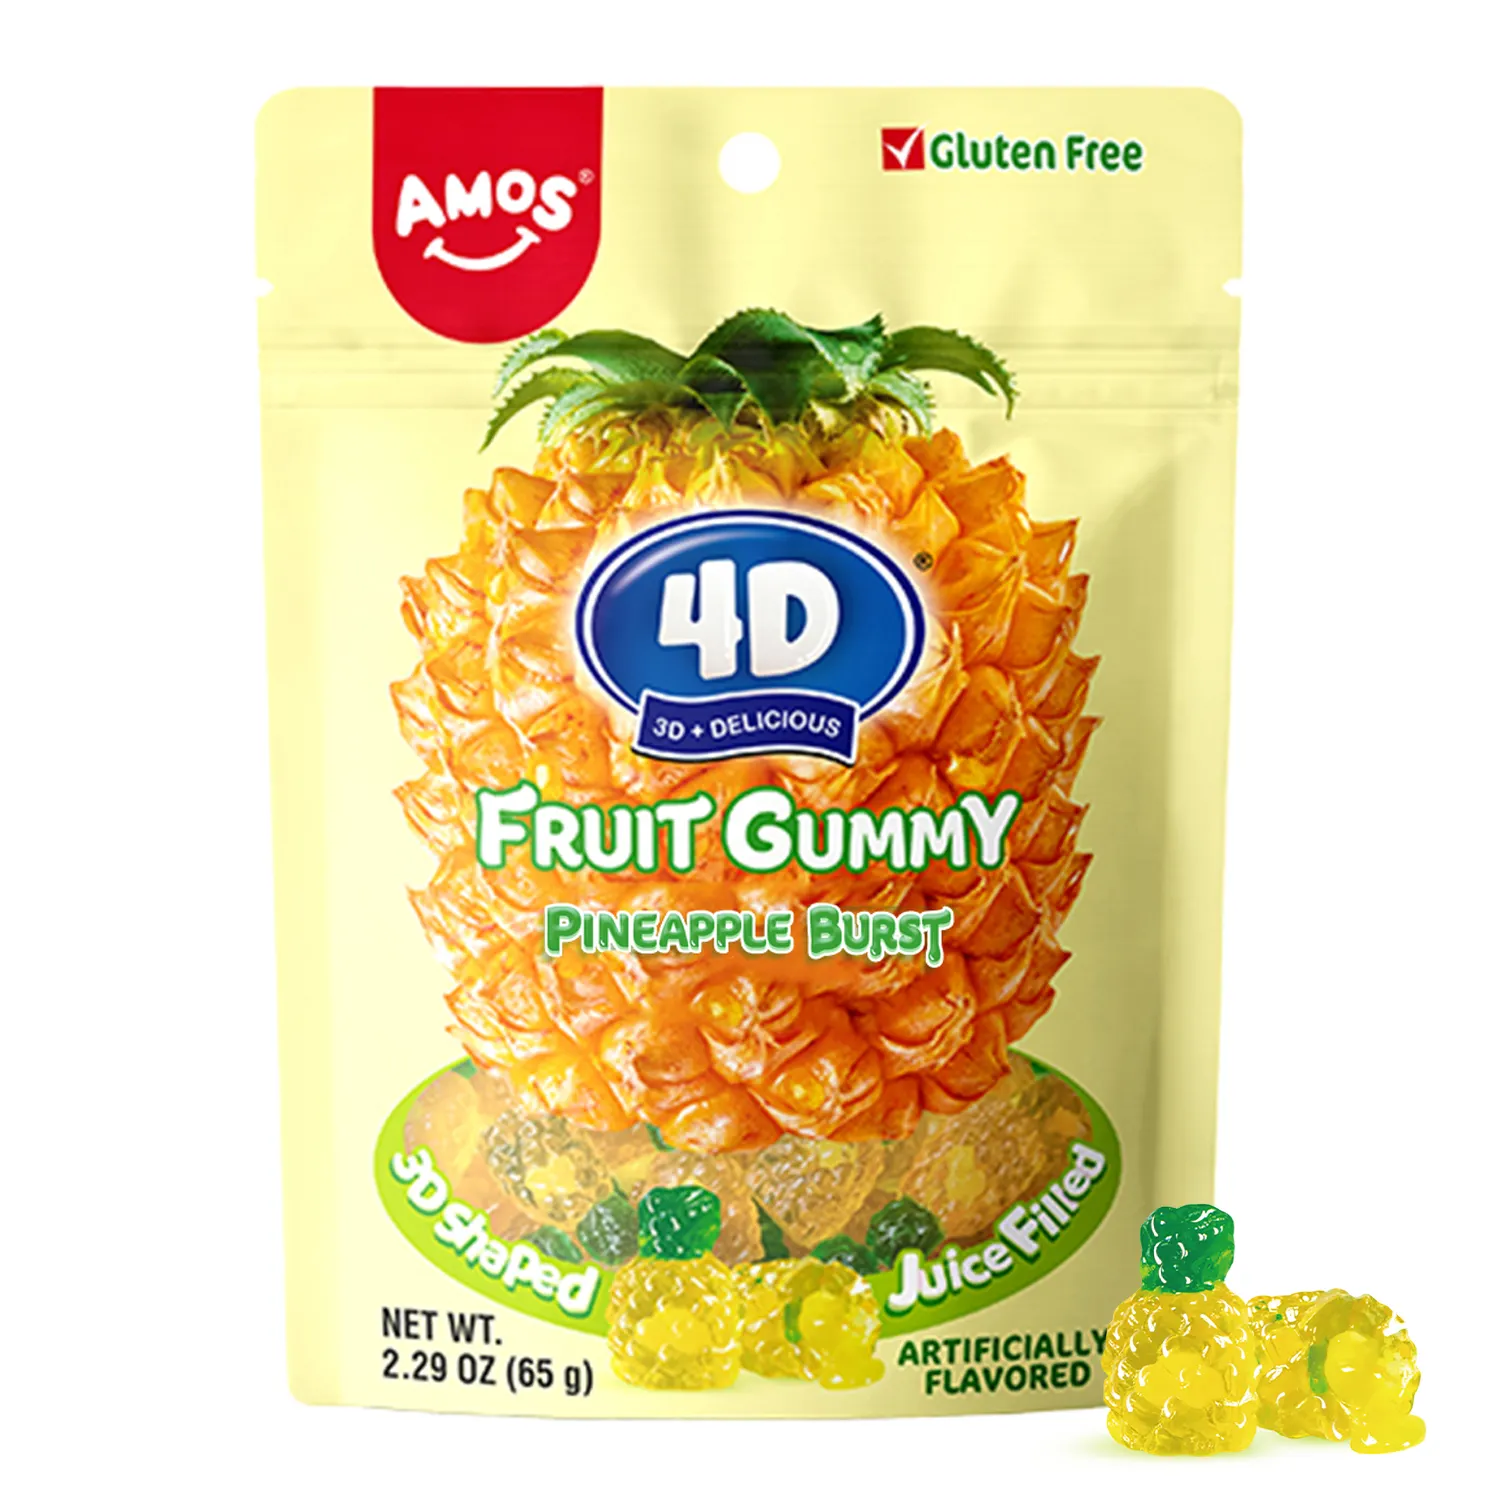 アモス4Dスモールグミキャンディーパイナップルグッドテイストフルーツフレーバー3Dグミソフト菓子